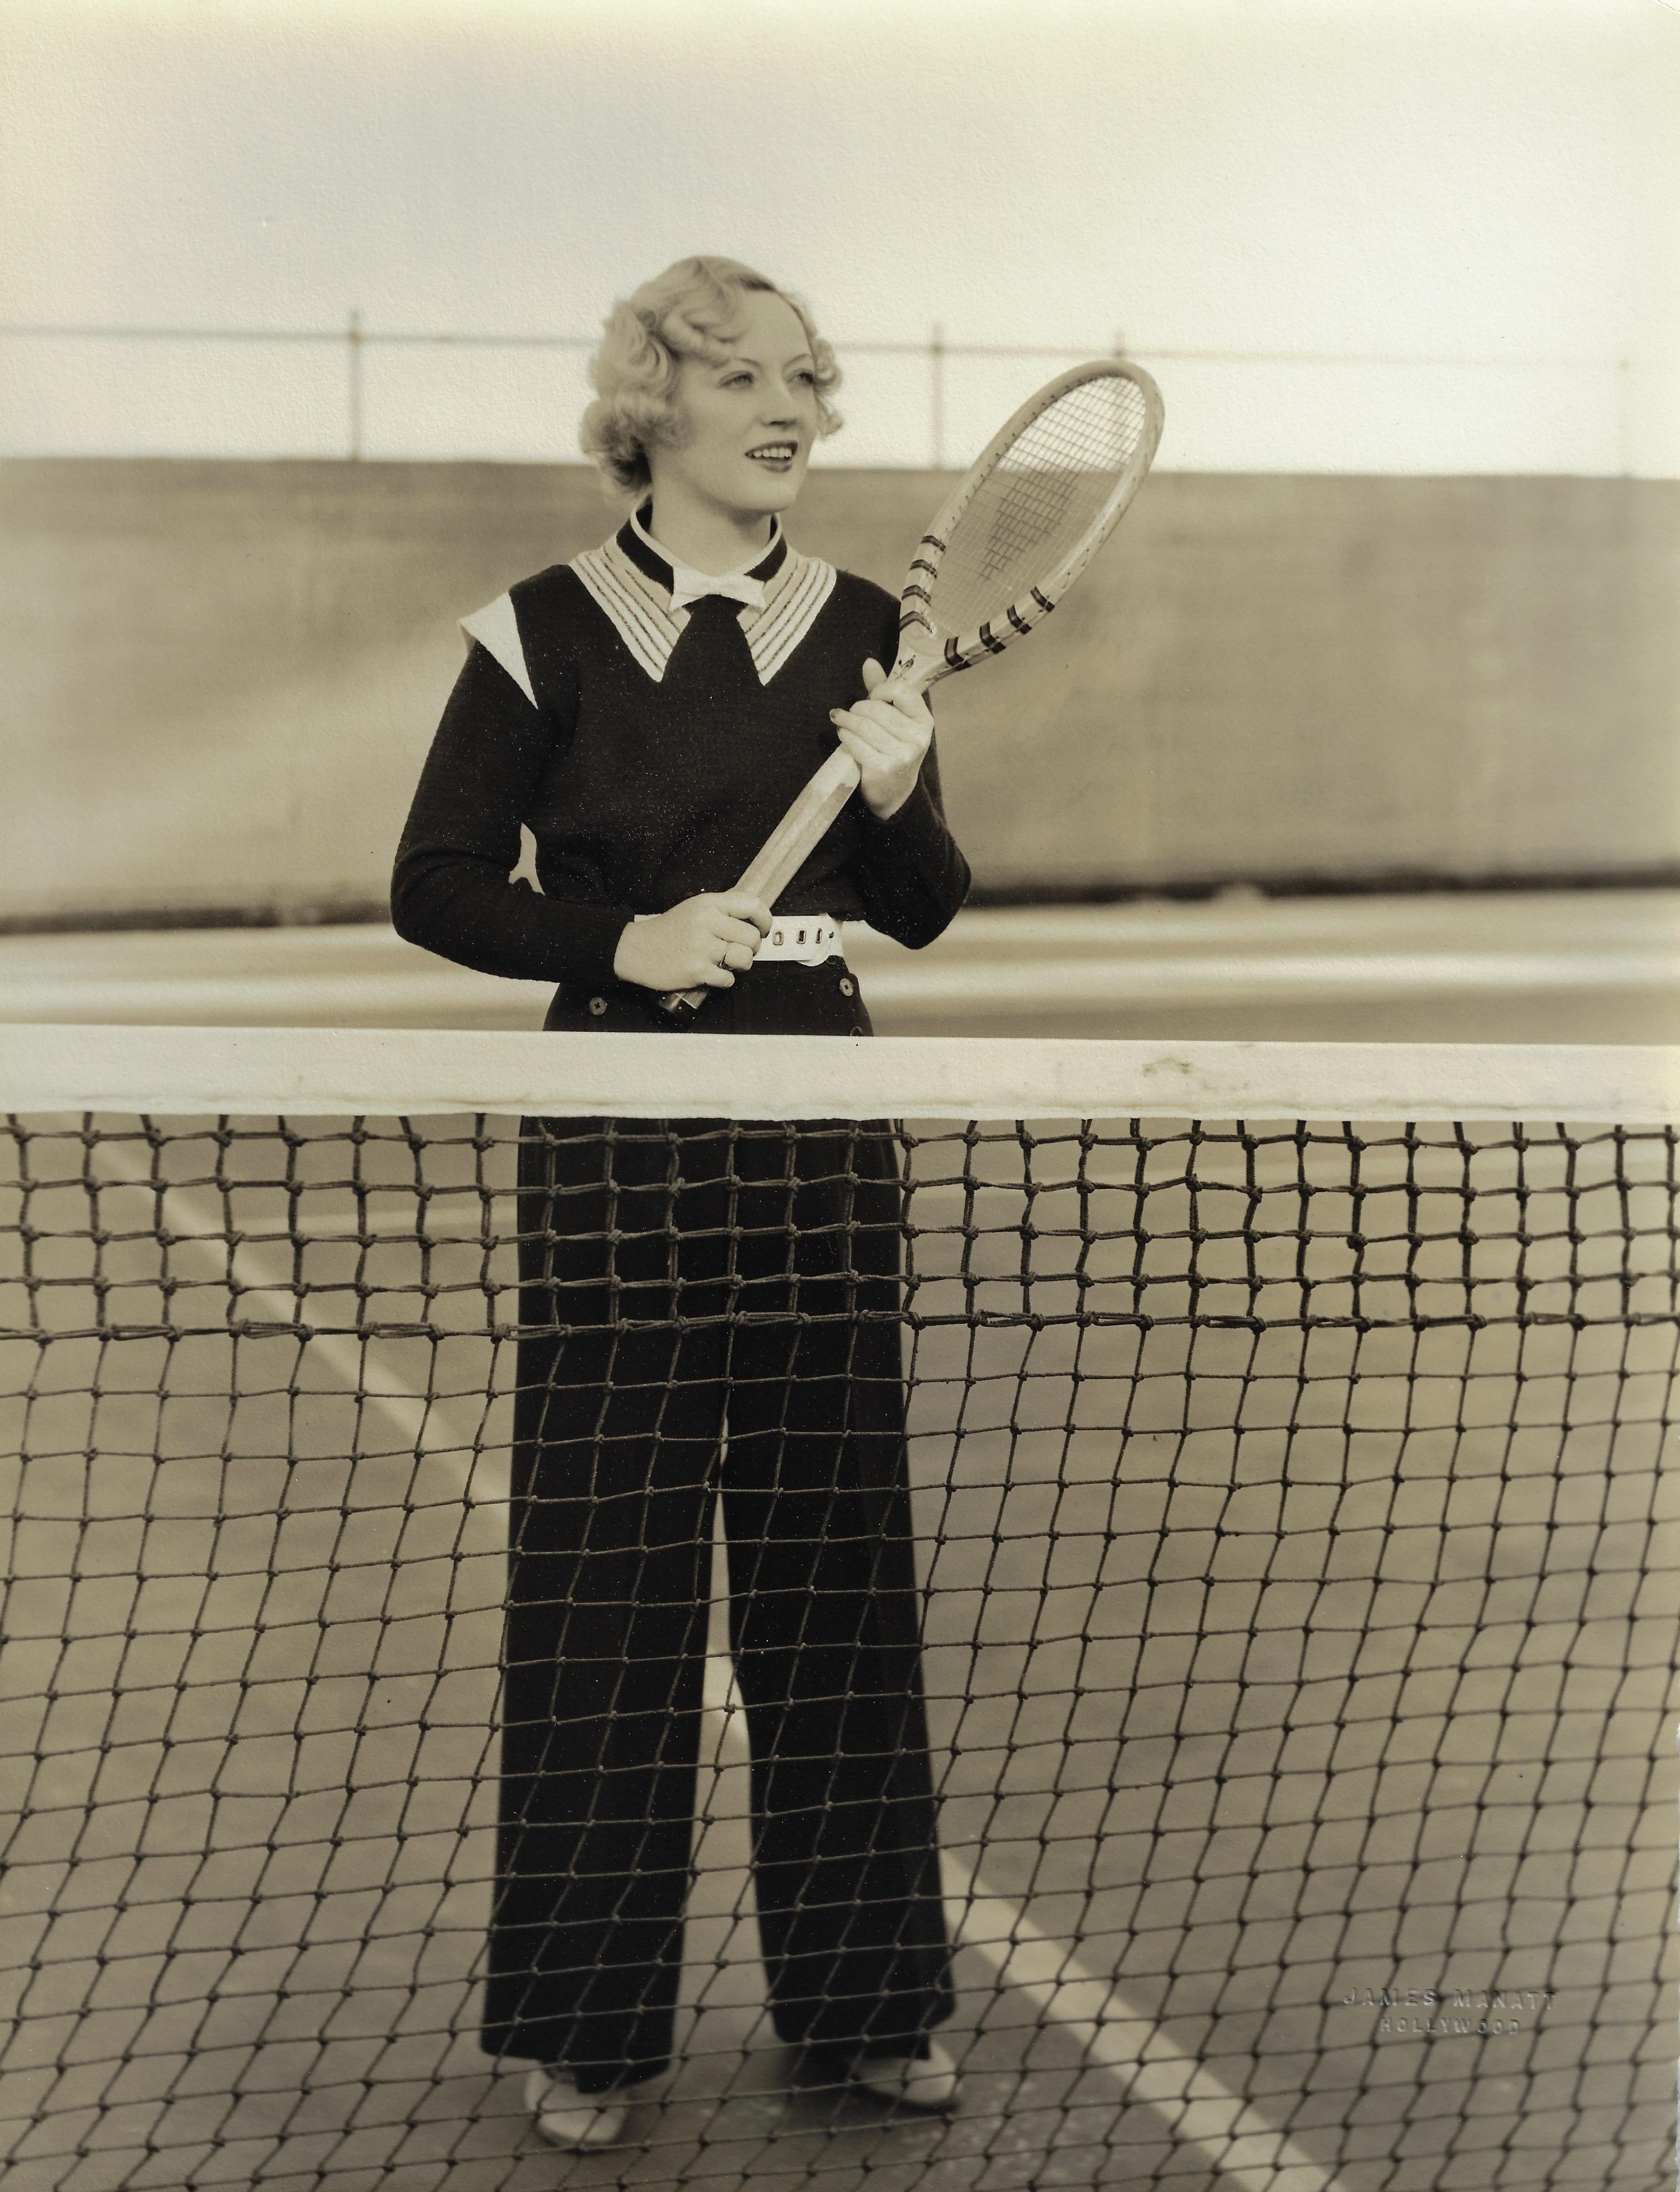 Marion Davies playing tennis